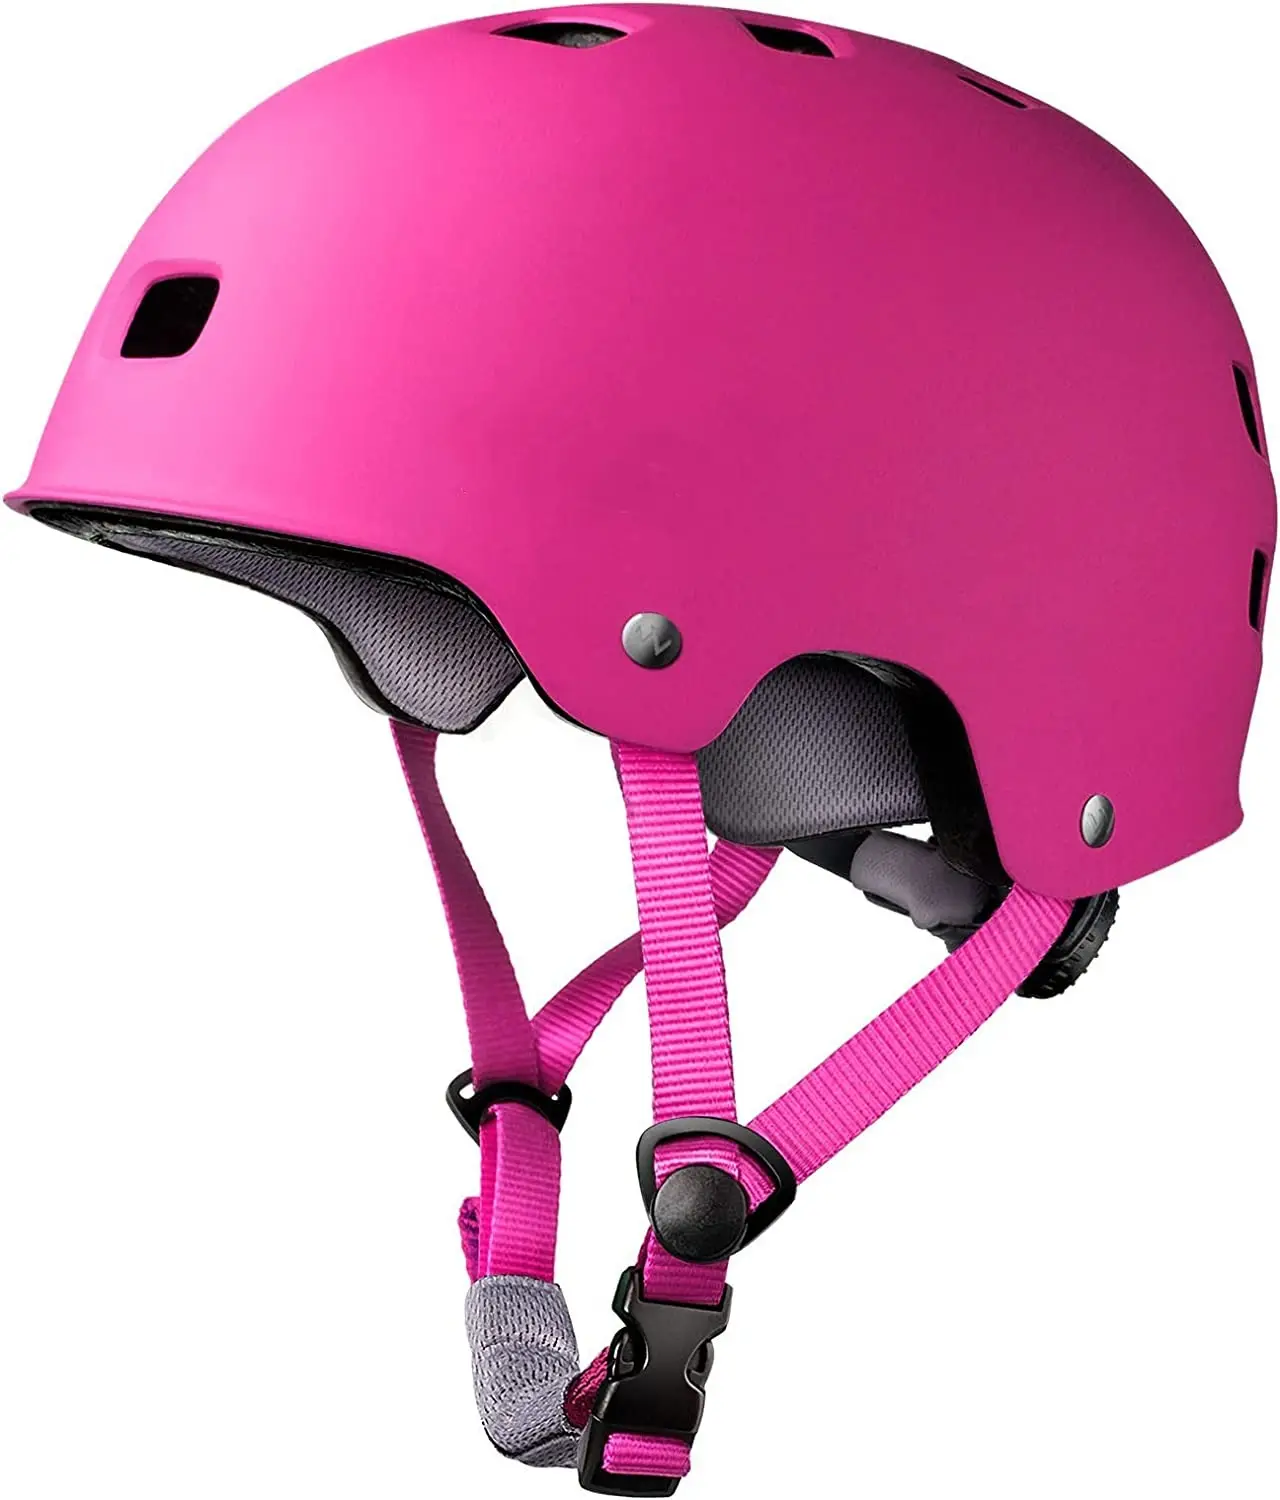 Оптовая продажа Регулируемый Детский шлем мульти-спорт от малышей до молодежи 3 размеров китайский Детский велосипедный шлем